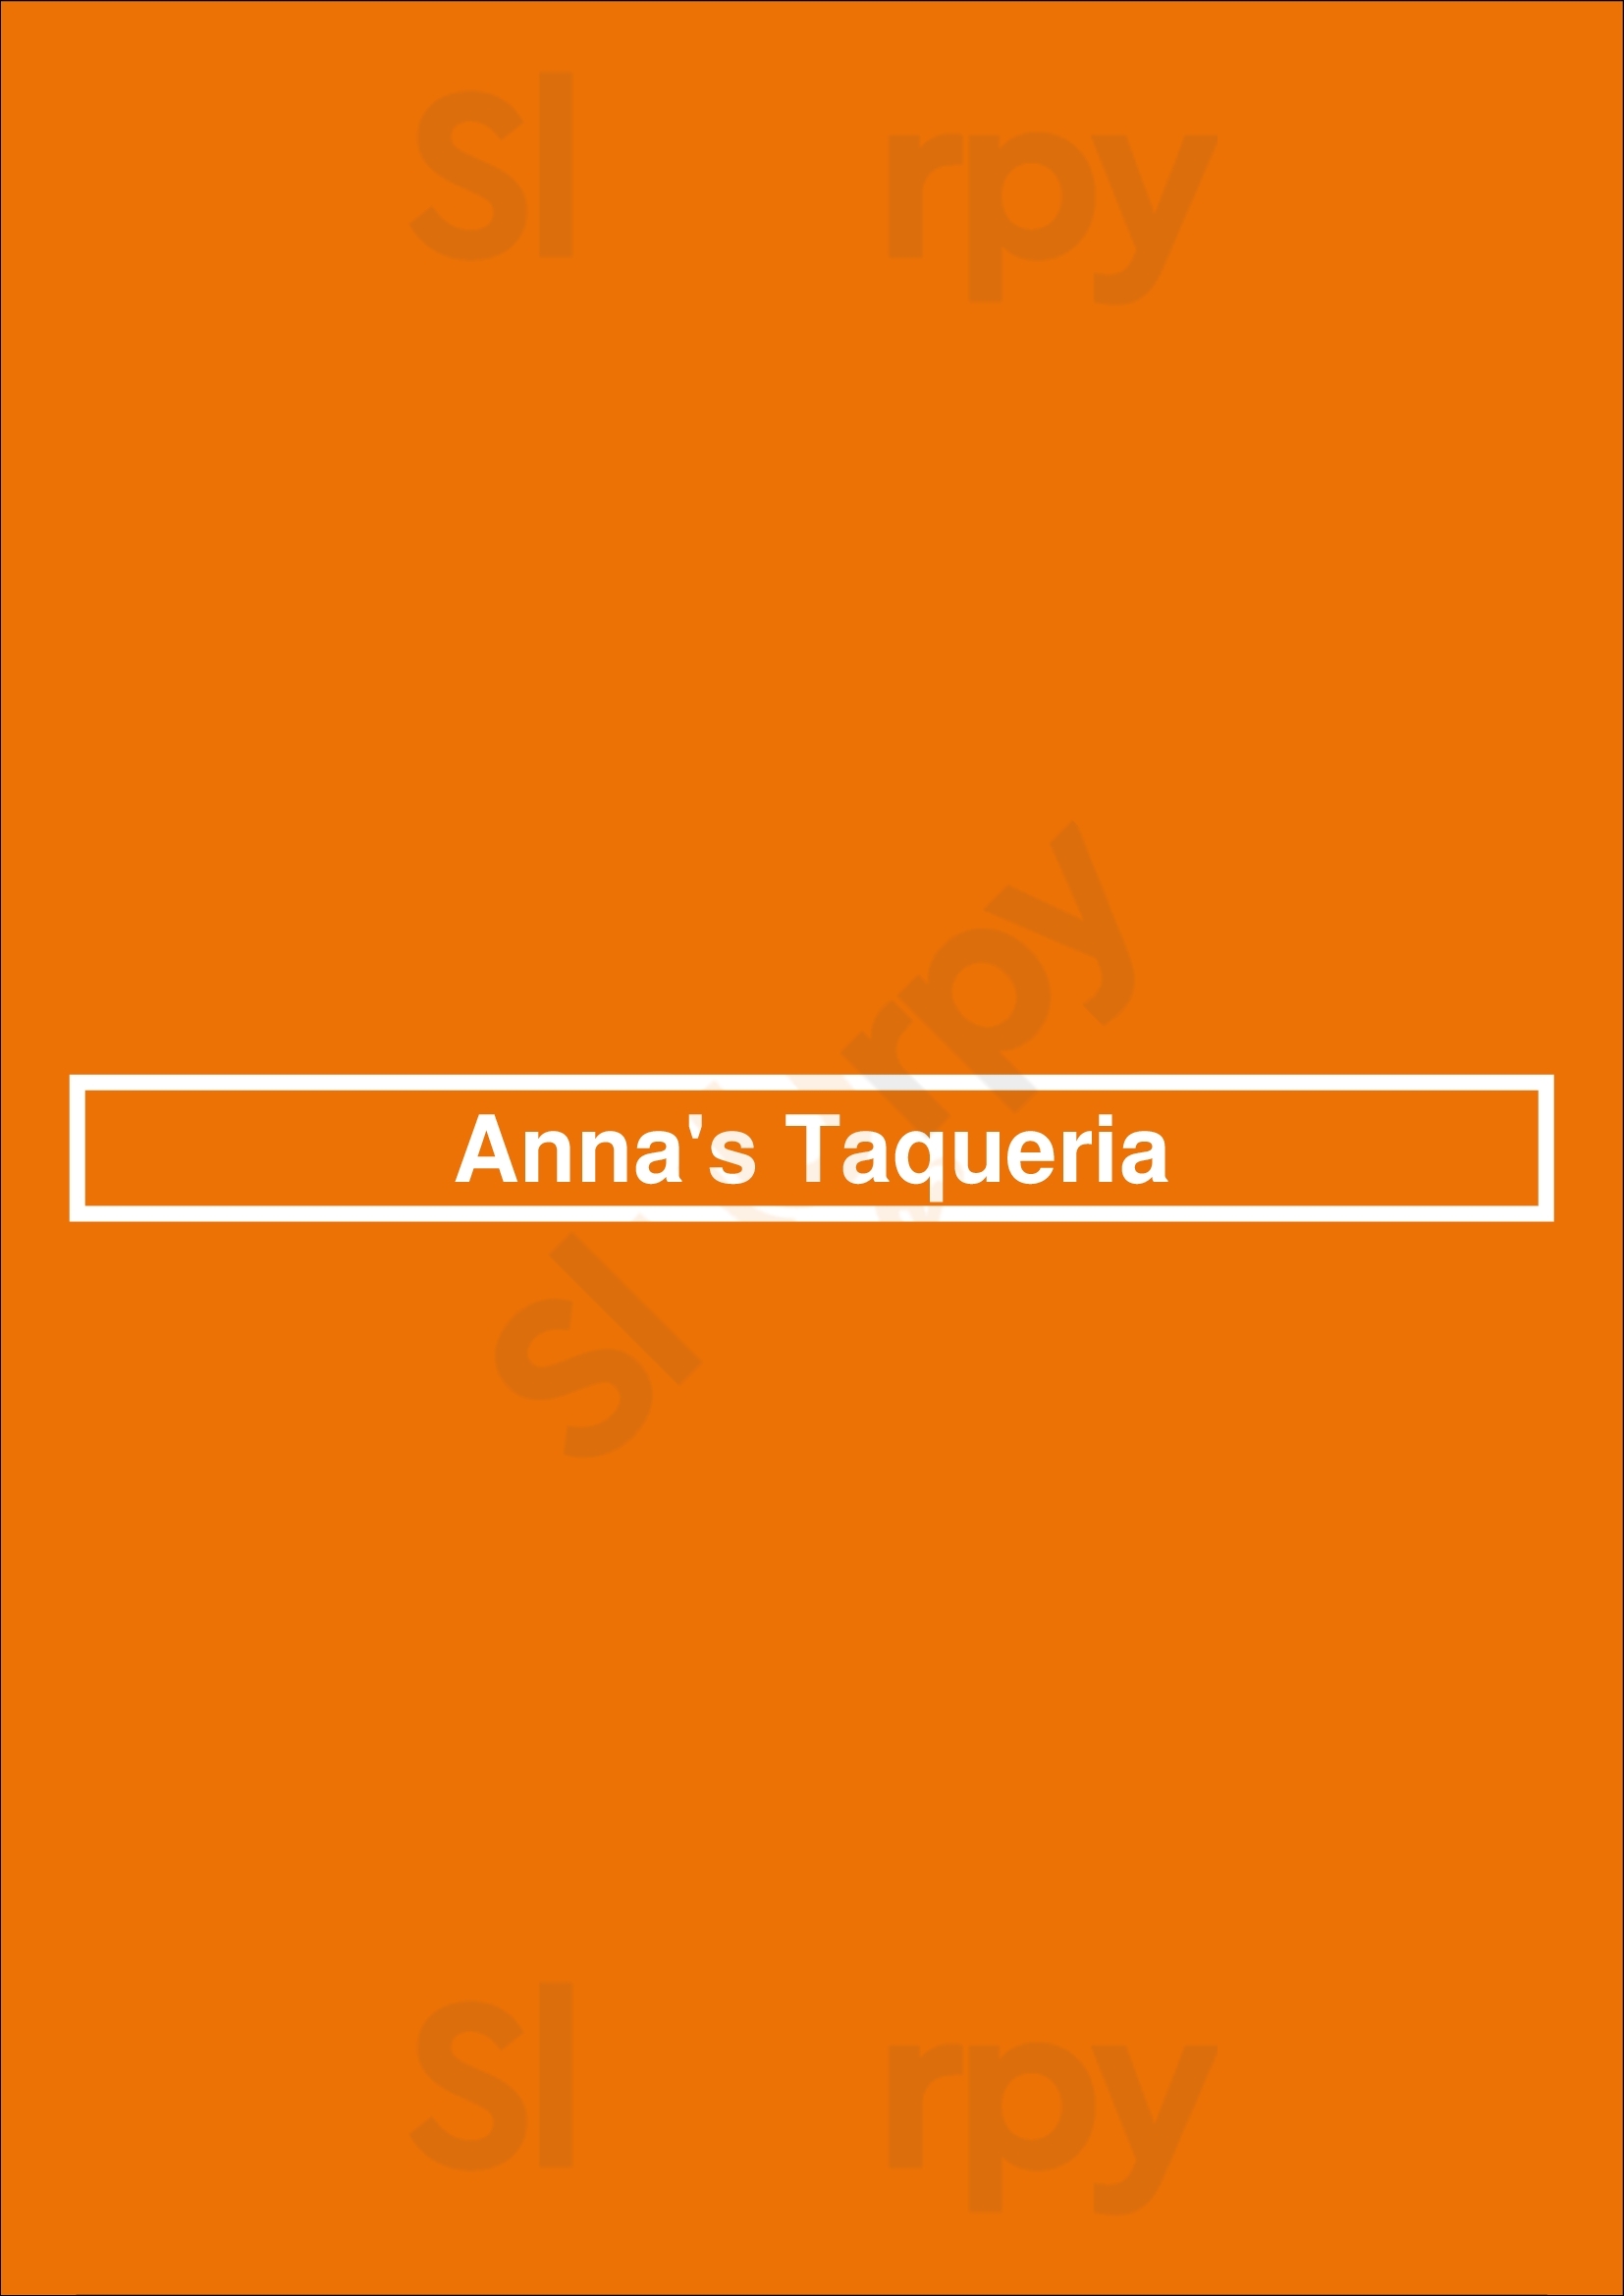 Anna's Taqueria Boston Menu - 1